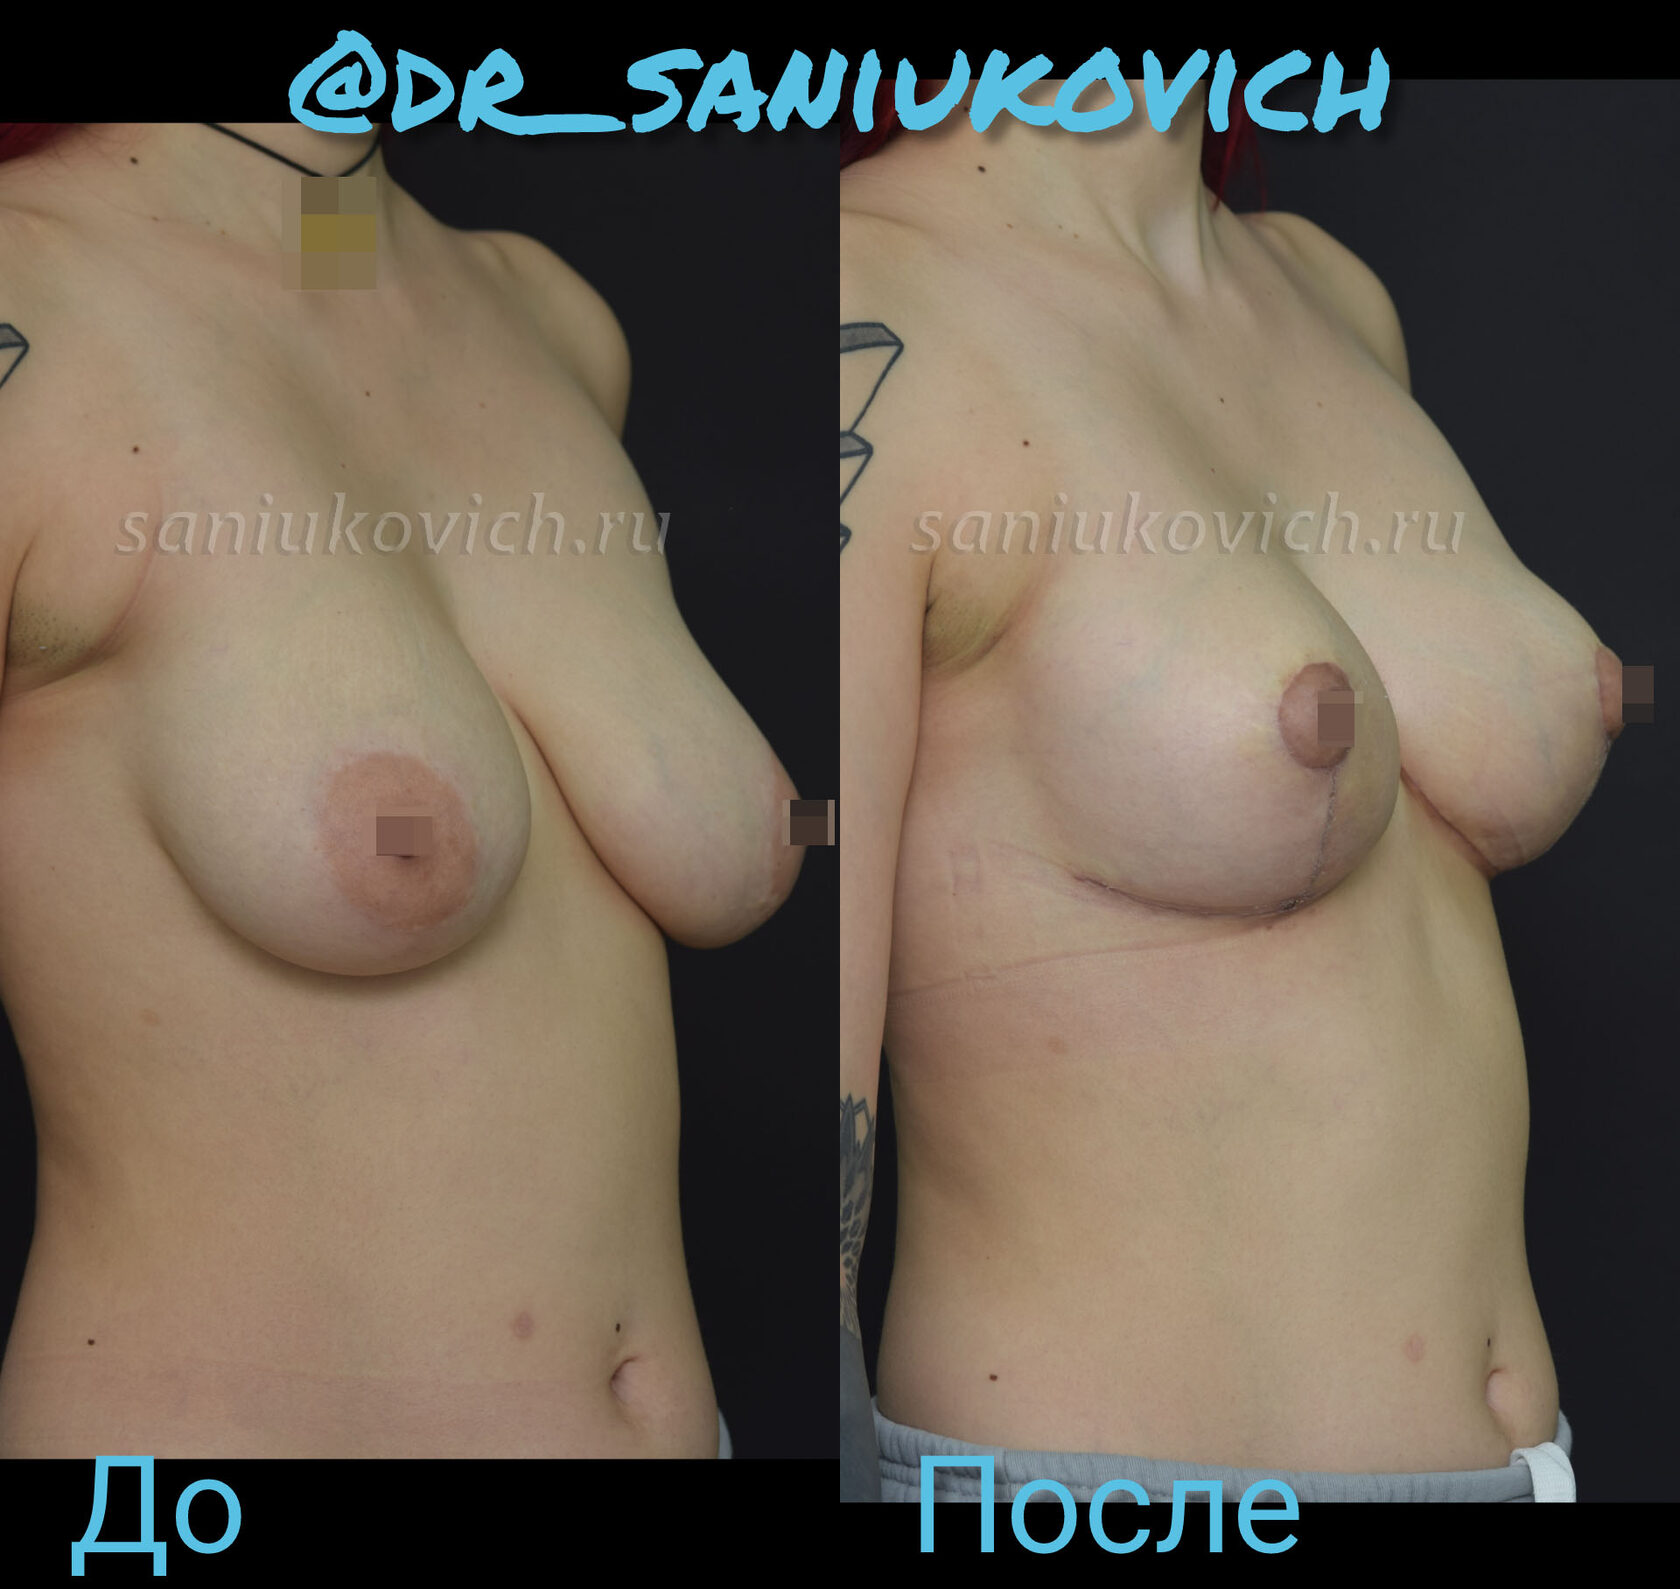 подтяжка груди женщин в домашних условиях фото 33